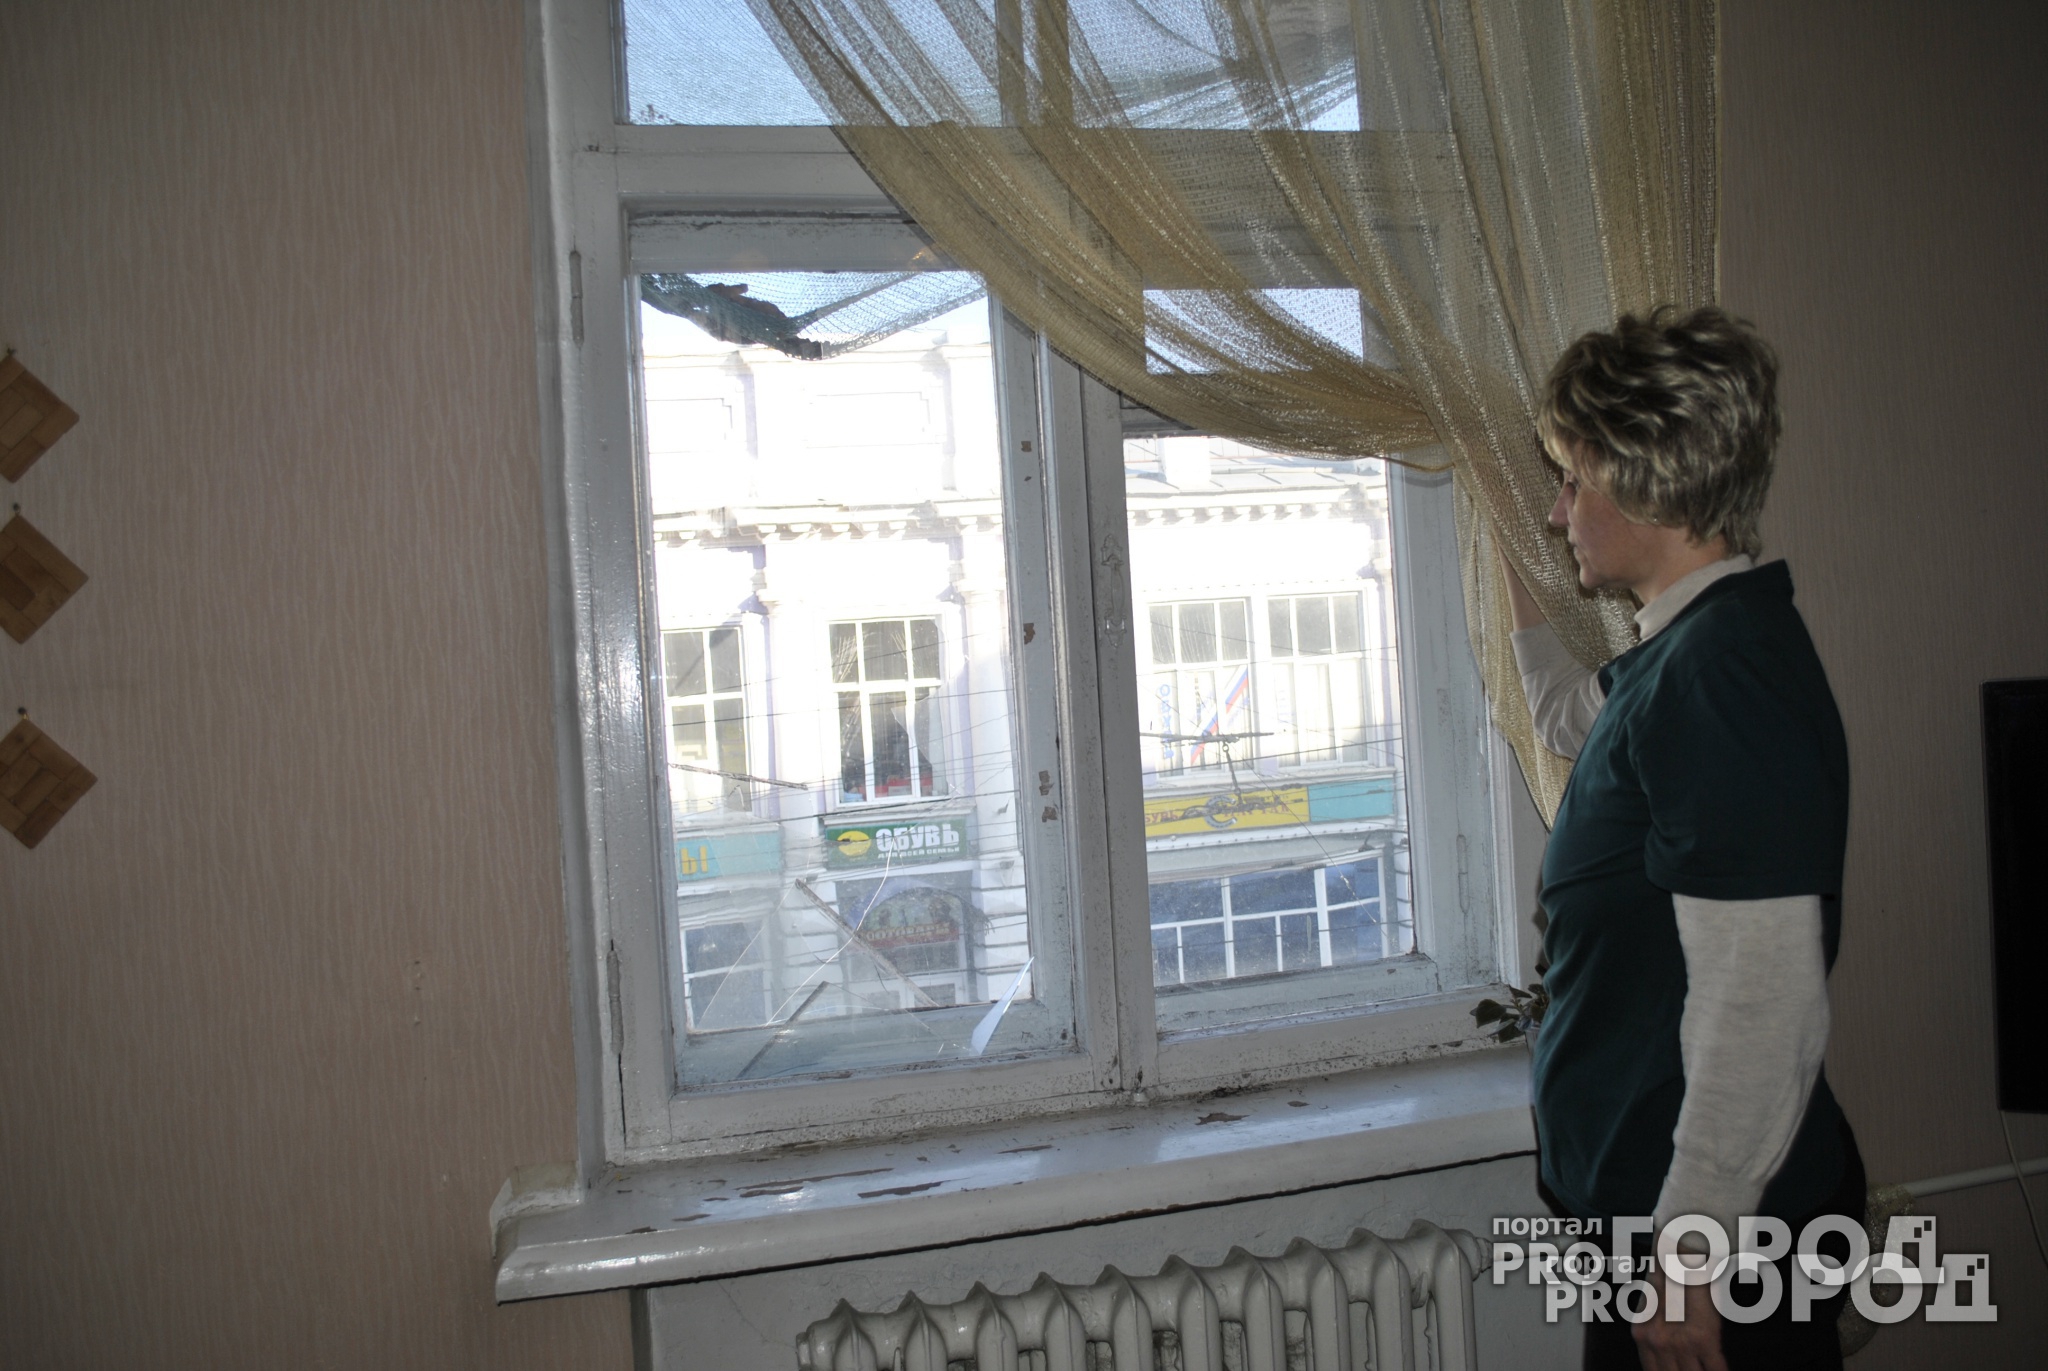 В Ярославле дети учатся в школе, где выпадают окна